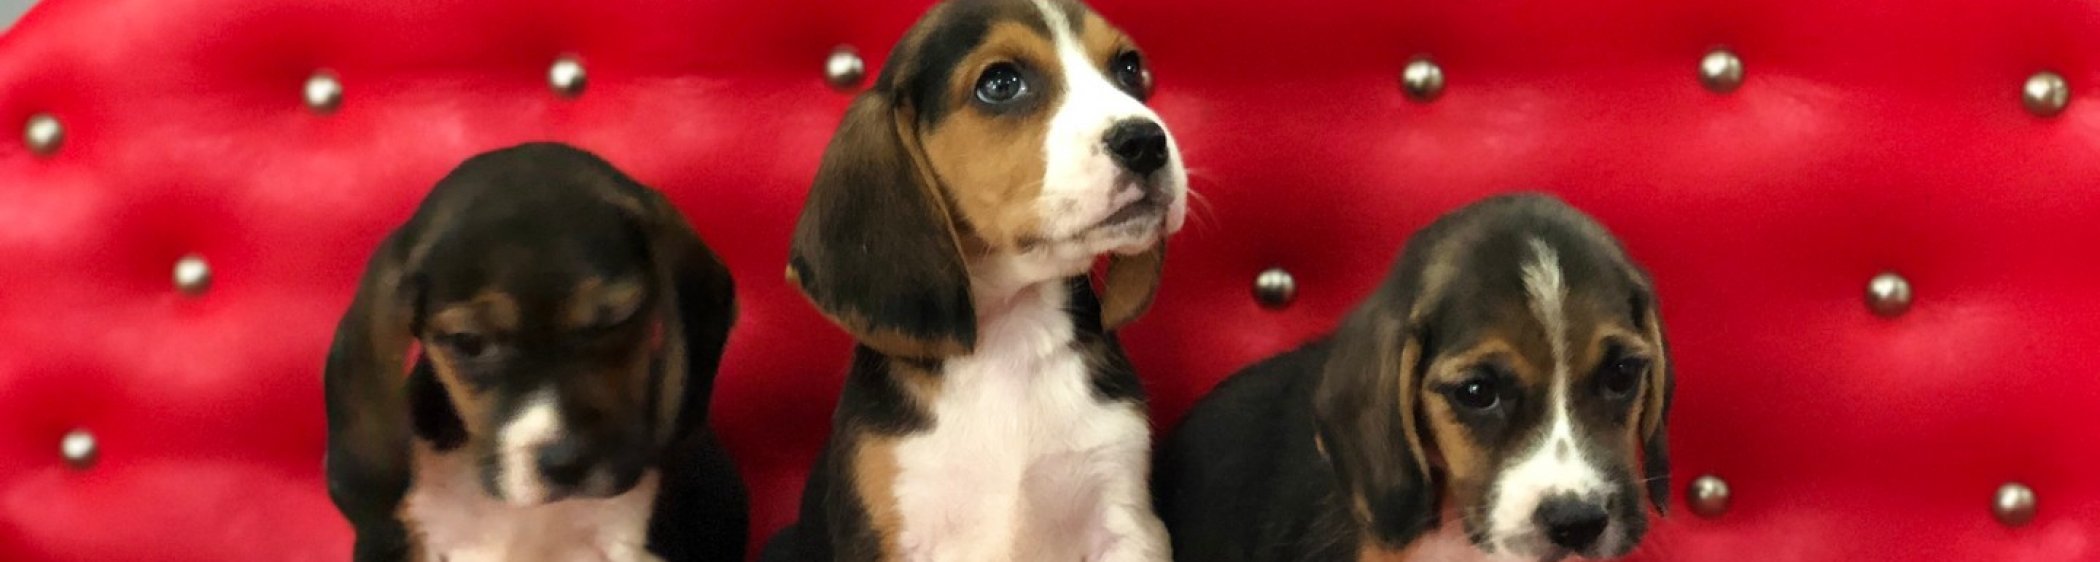 Satılık Beagle Yavruları resmi